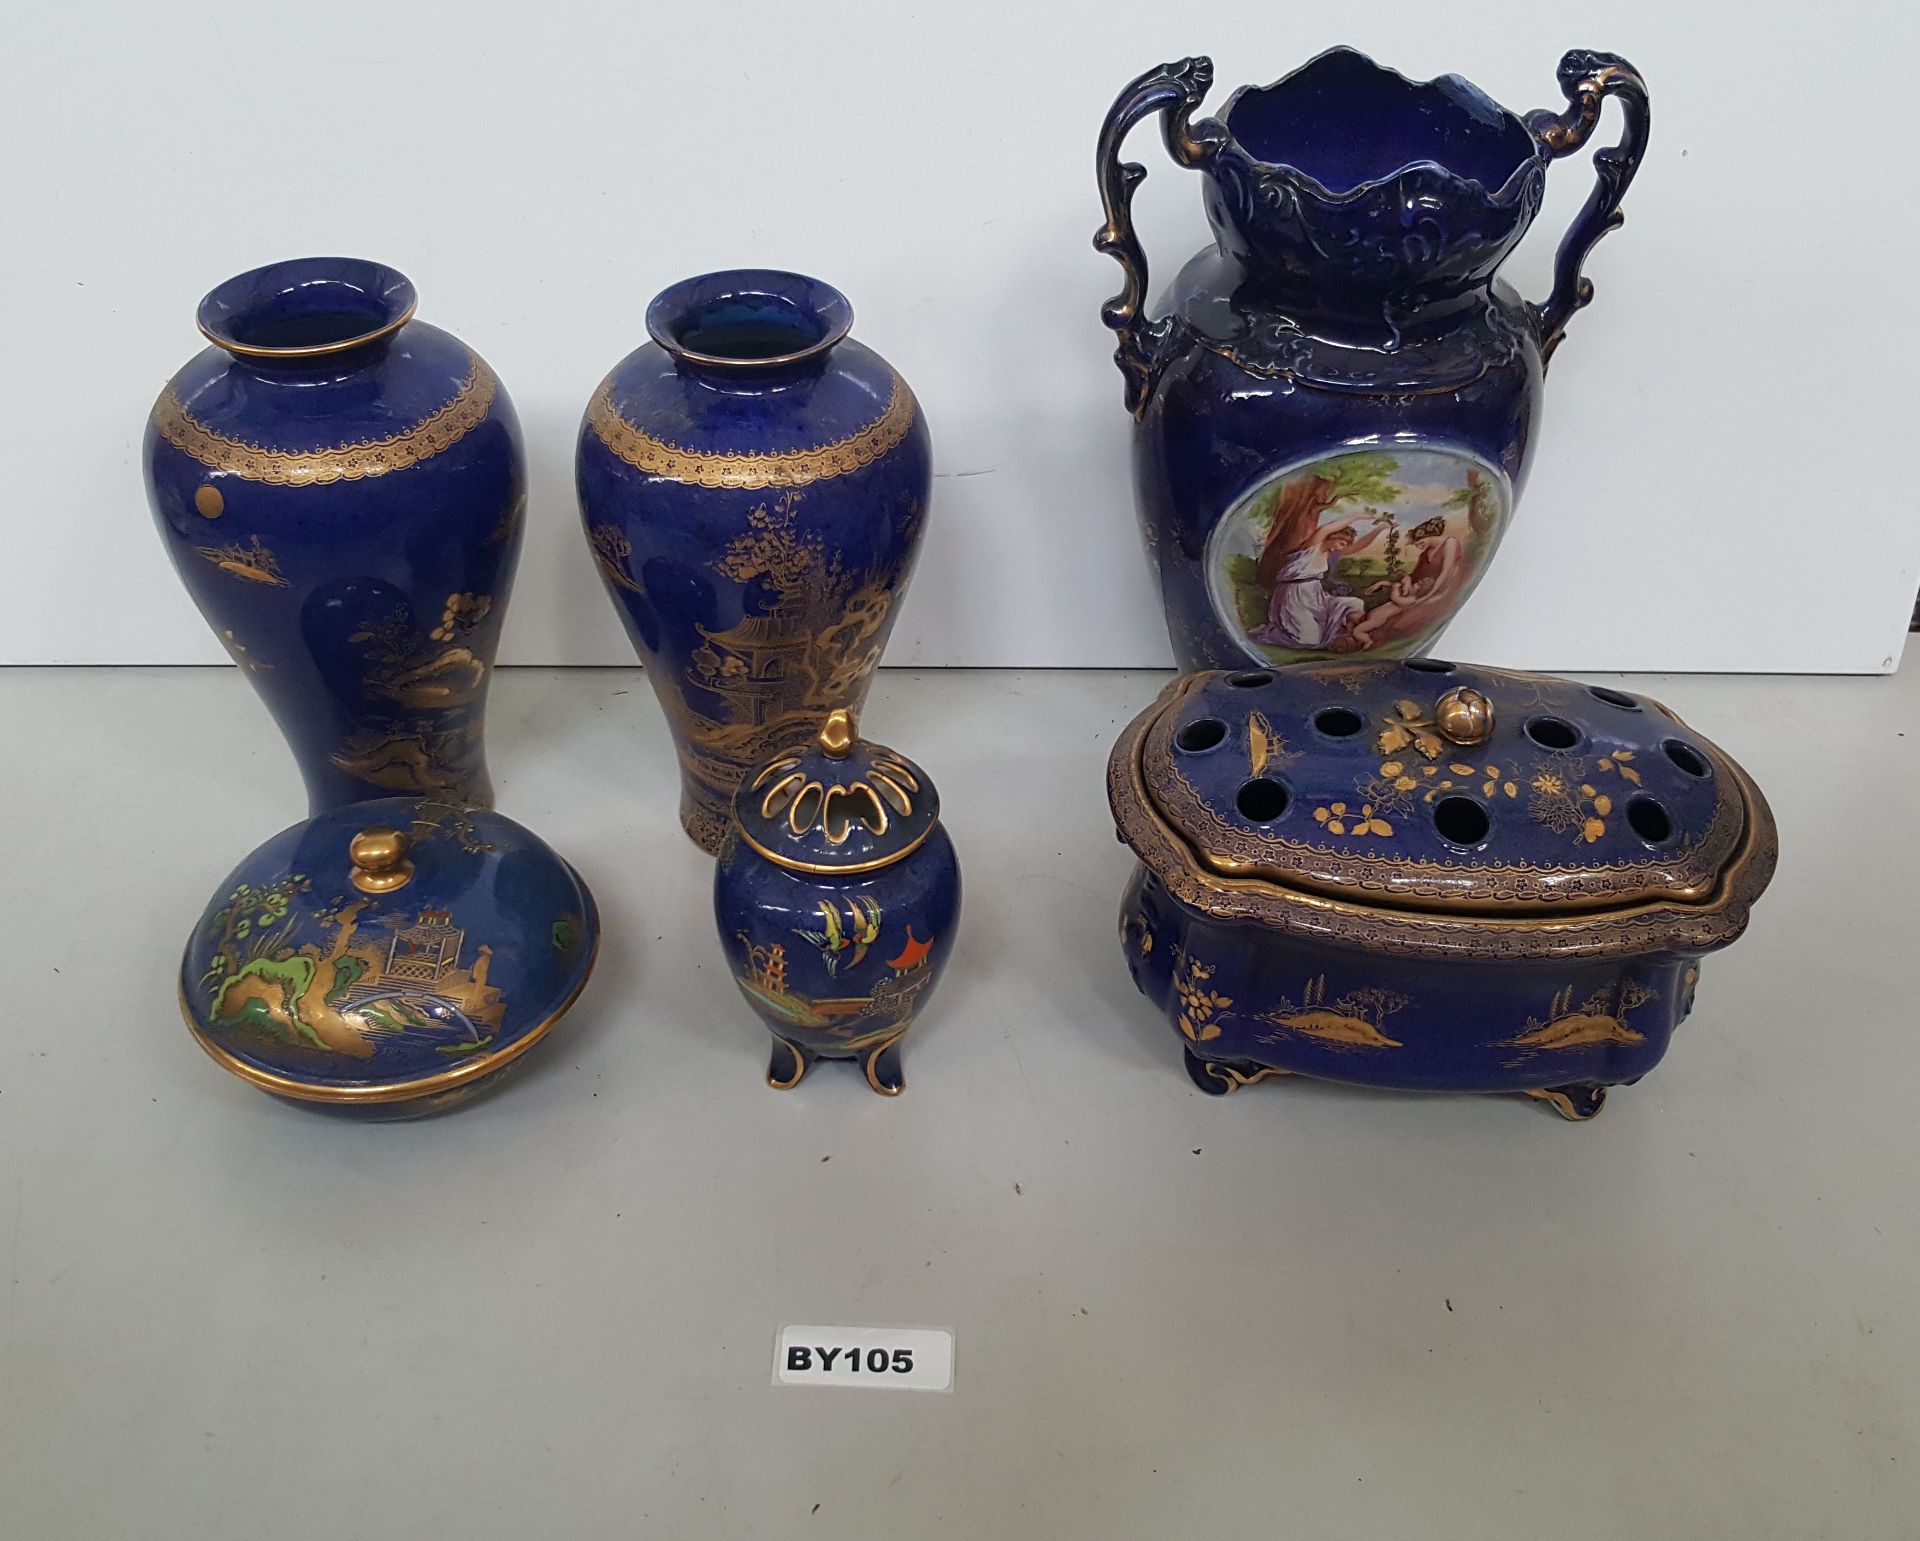 1 x 6 Pieces Of Vintage Porcelain Vares & Pots - Ref BY105 I